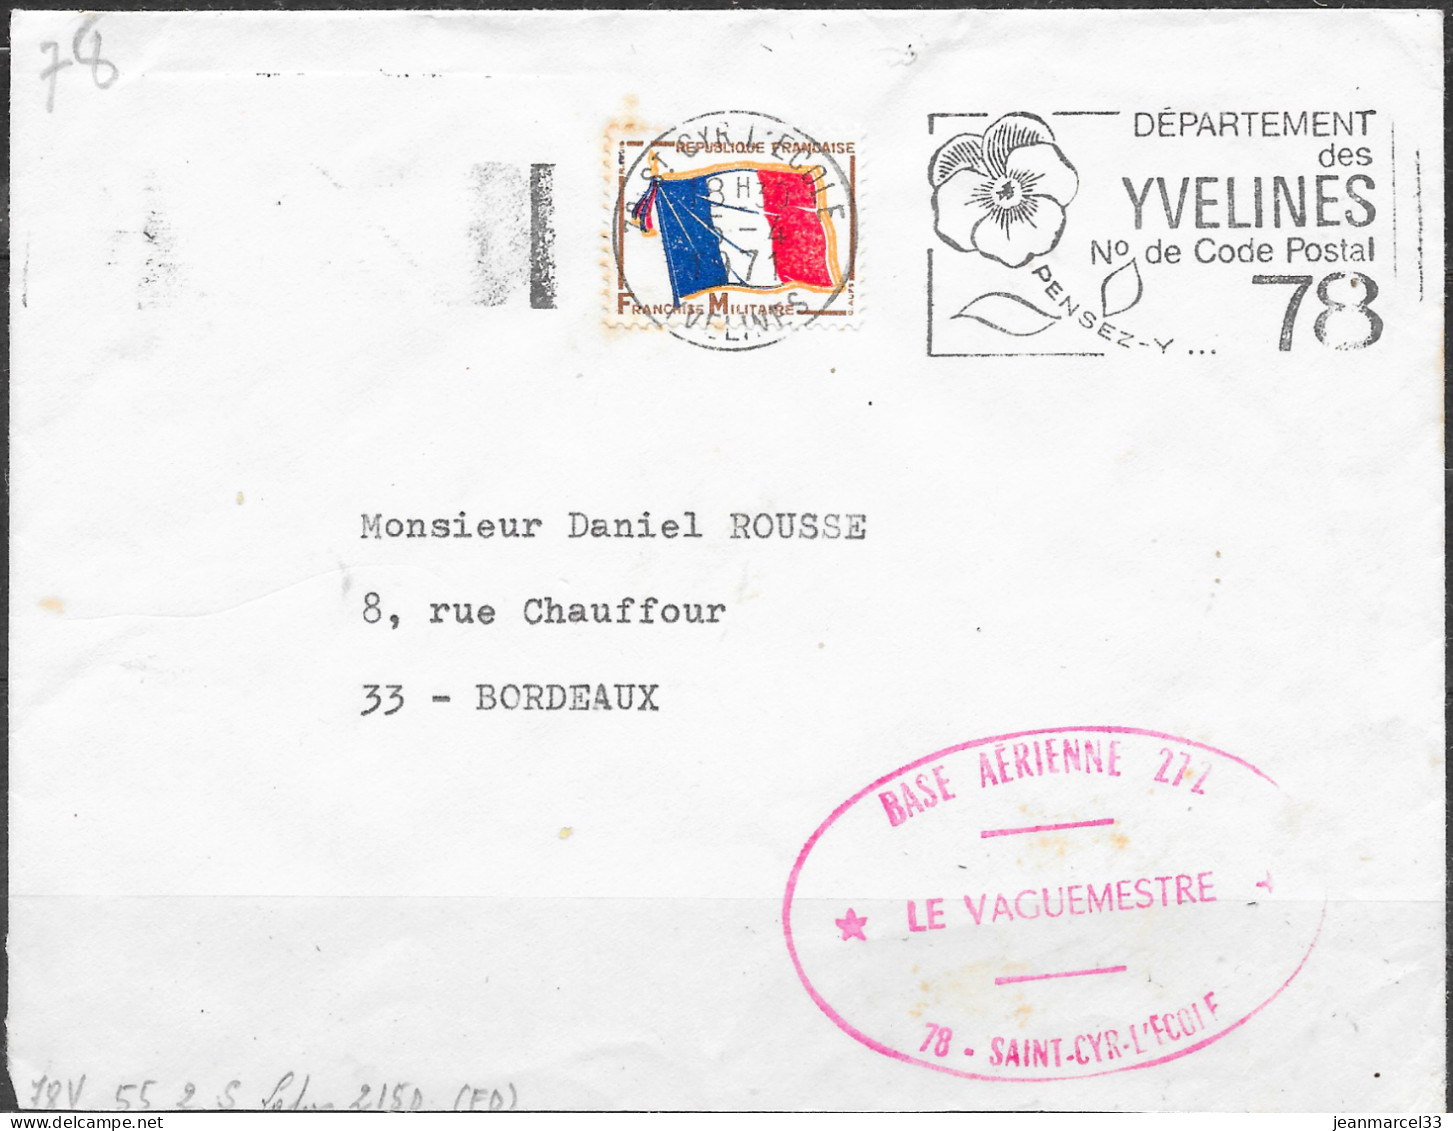 Base Aérienne 272  78-Saint-Cyr-l'Ecole / Le Vaguemestre  Flamme O= 78 St Cyr L'Ecole 5-4 1971 - Military Airmail